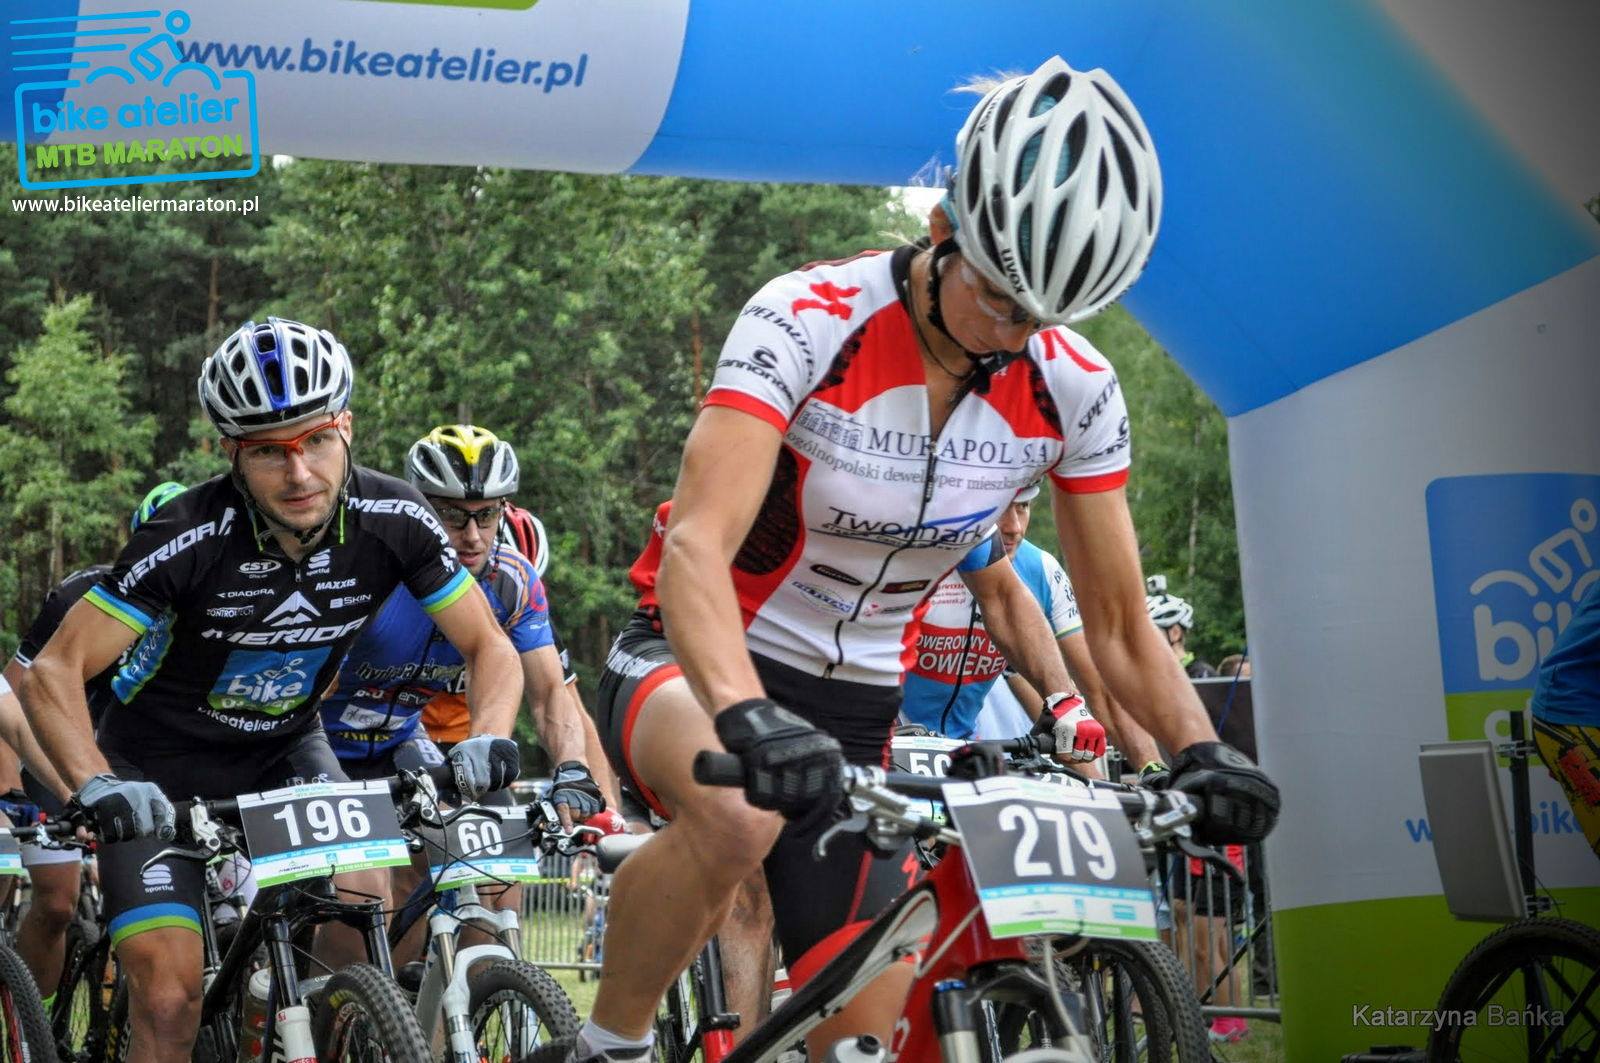 Ewa Rebane Sodowska – (Twomark Sport Specialized) – Bike Atelier MTB Maraton – Dąbrowa Górnicza